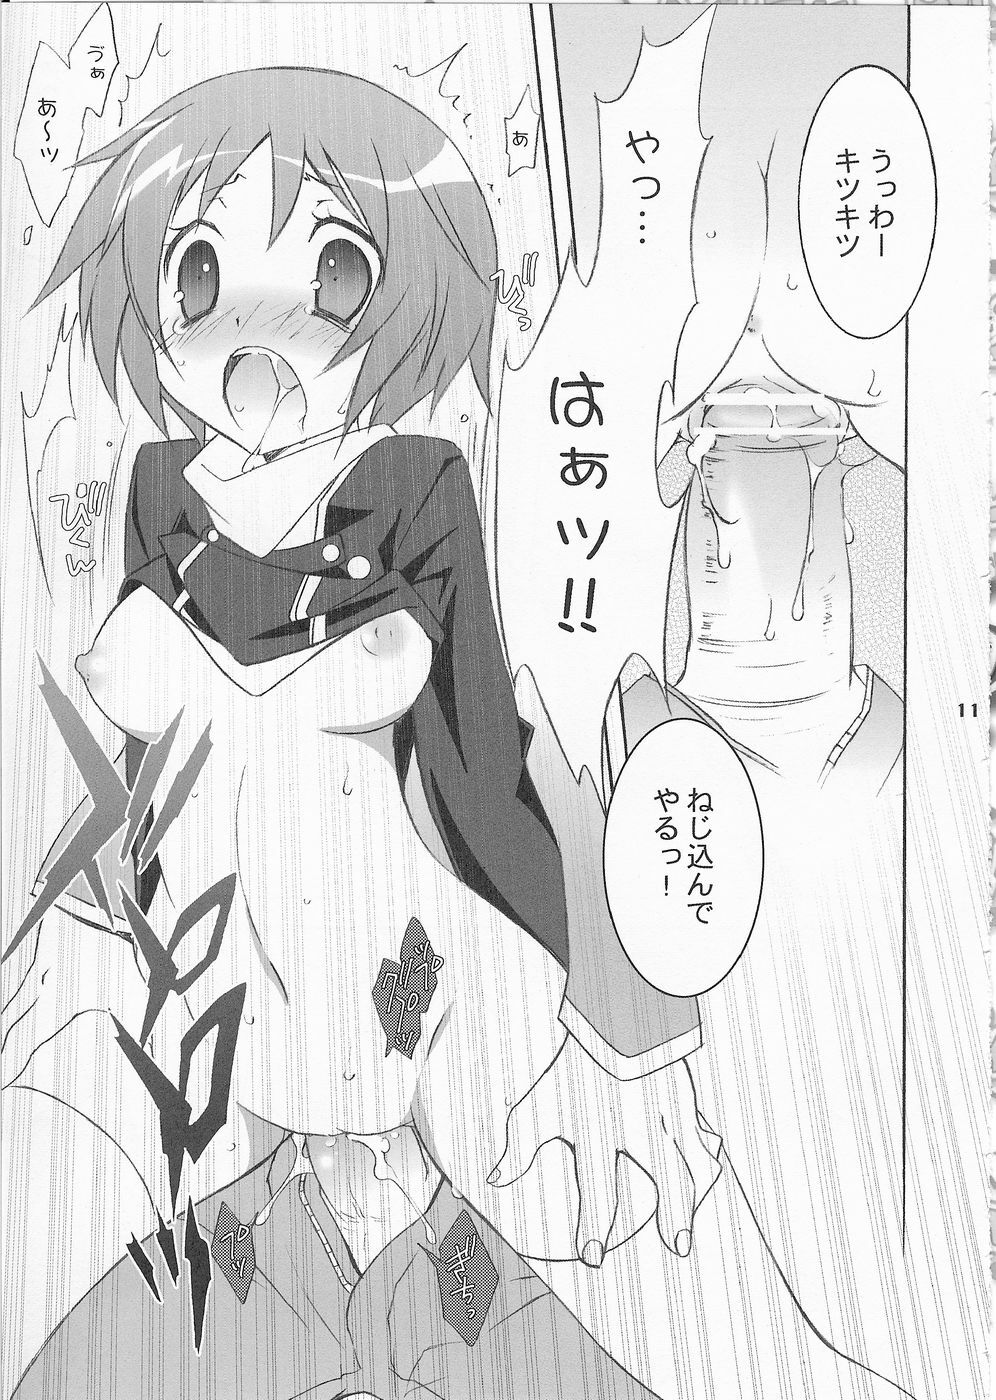 (SC33) [Tenjikuya (Mochizuki Nana)] 3P (Persona 3) page 10 full